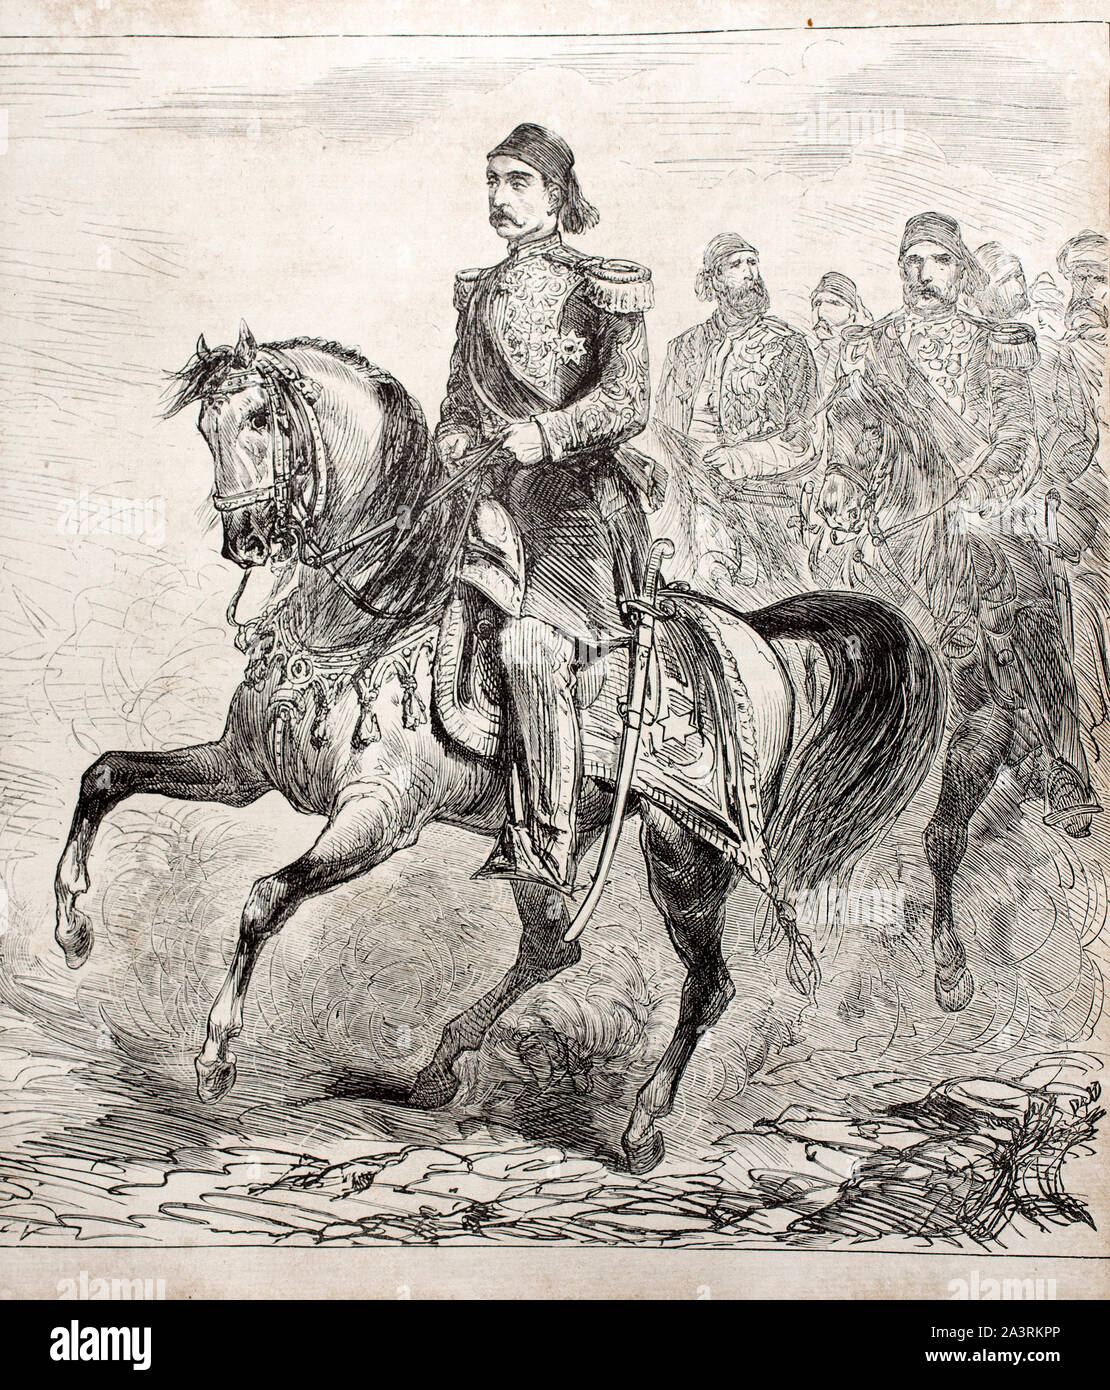 Abdul Hamid II (1842 - 1918) war der 34. Sultan des Osmanischen Reiches und der letzte Sultan, um eine wirksame Kontrolle über die Zersplitterung Staat ausüben. Stockfoto